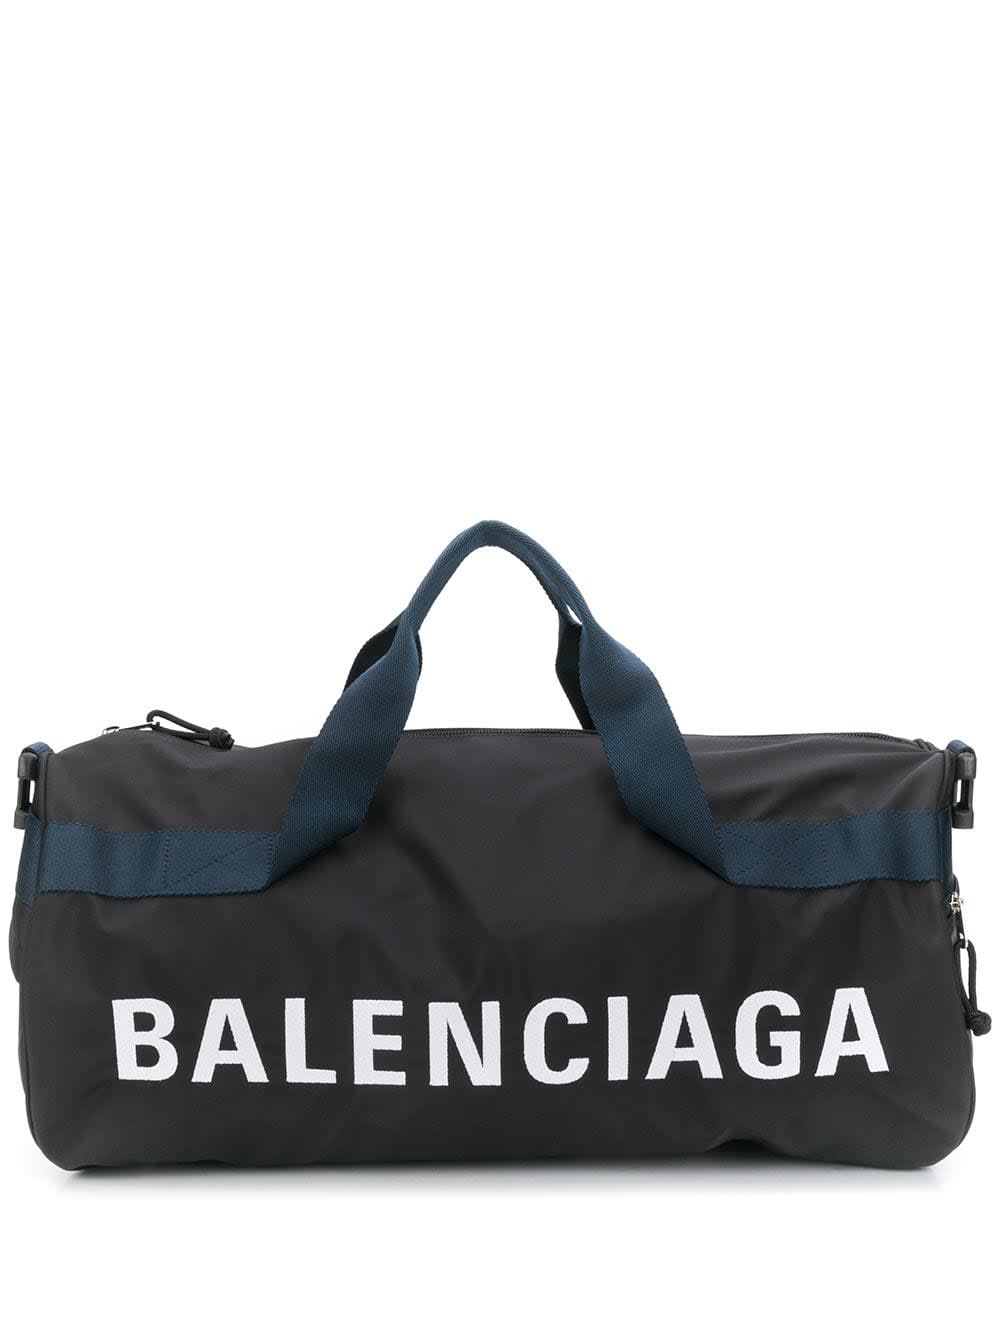 Balenciaga Wheel Gym Bag In Black Navy Blue